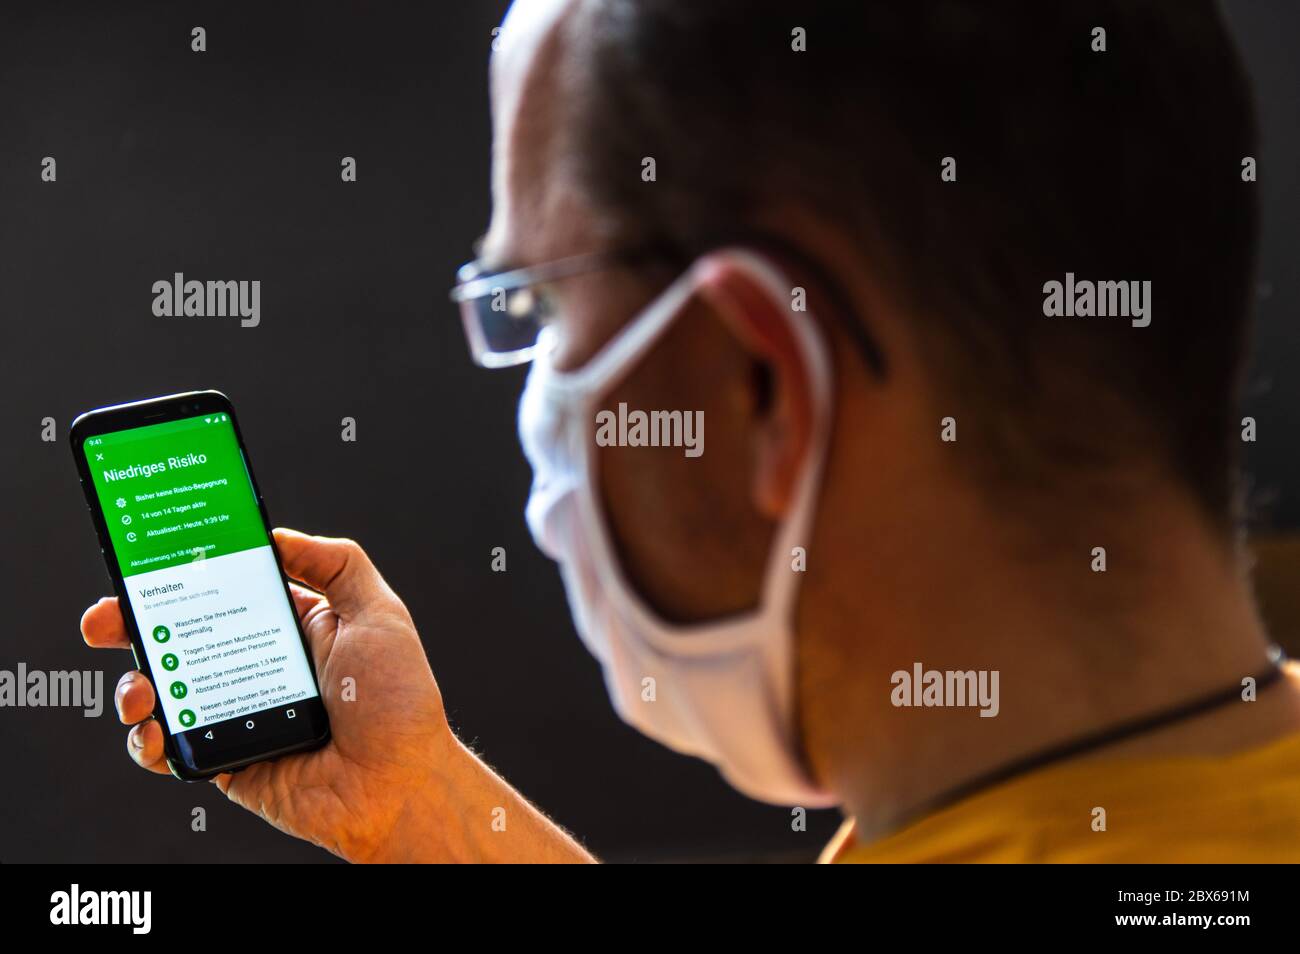 Il giovane uomo che indossa una maschera protettiva controlla l'app tedesca corona WARN per la sua analisi del rischio di infezione. Niedriges Risiko = Tedesco per basso rischio, Foto Stock